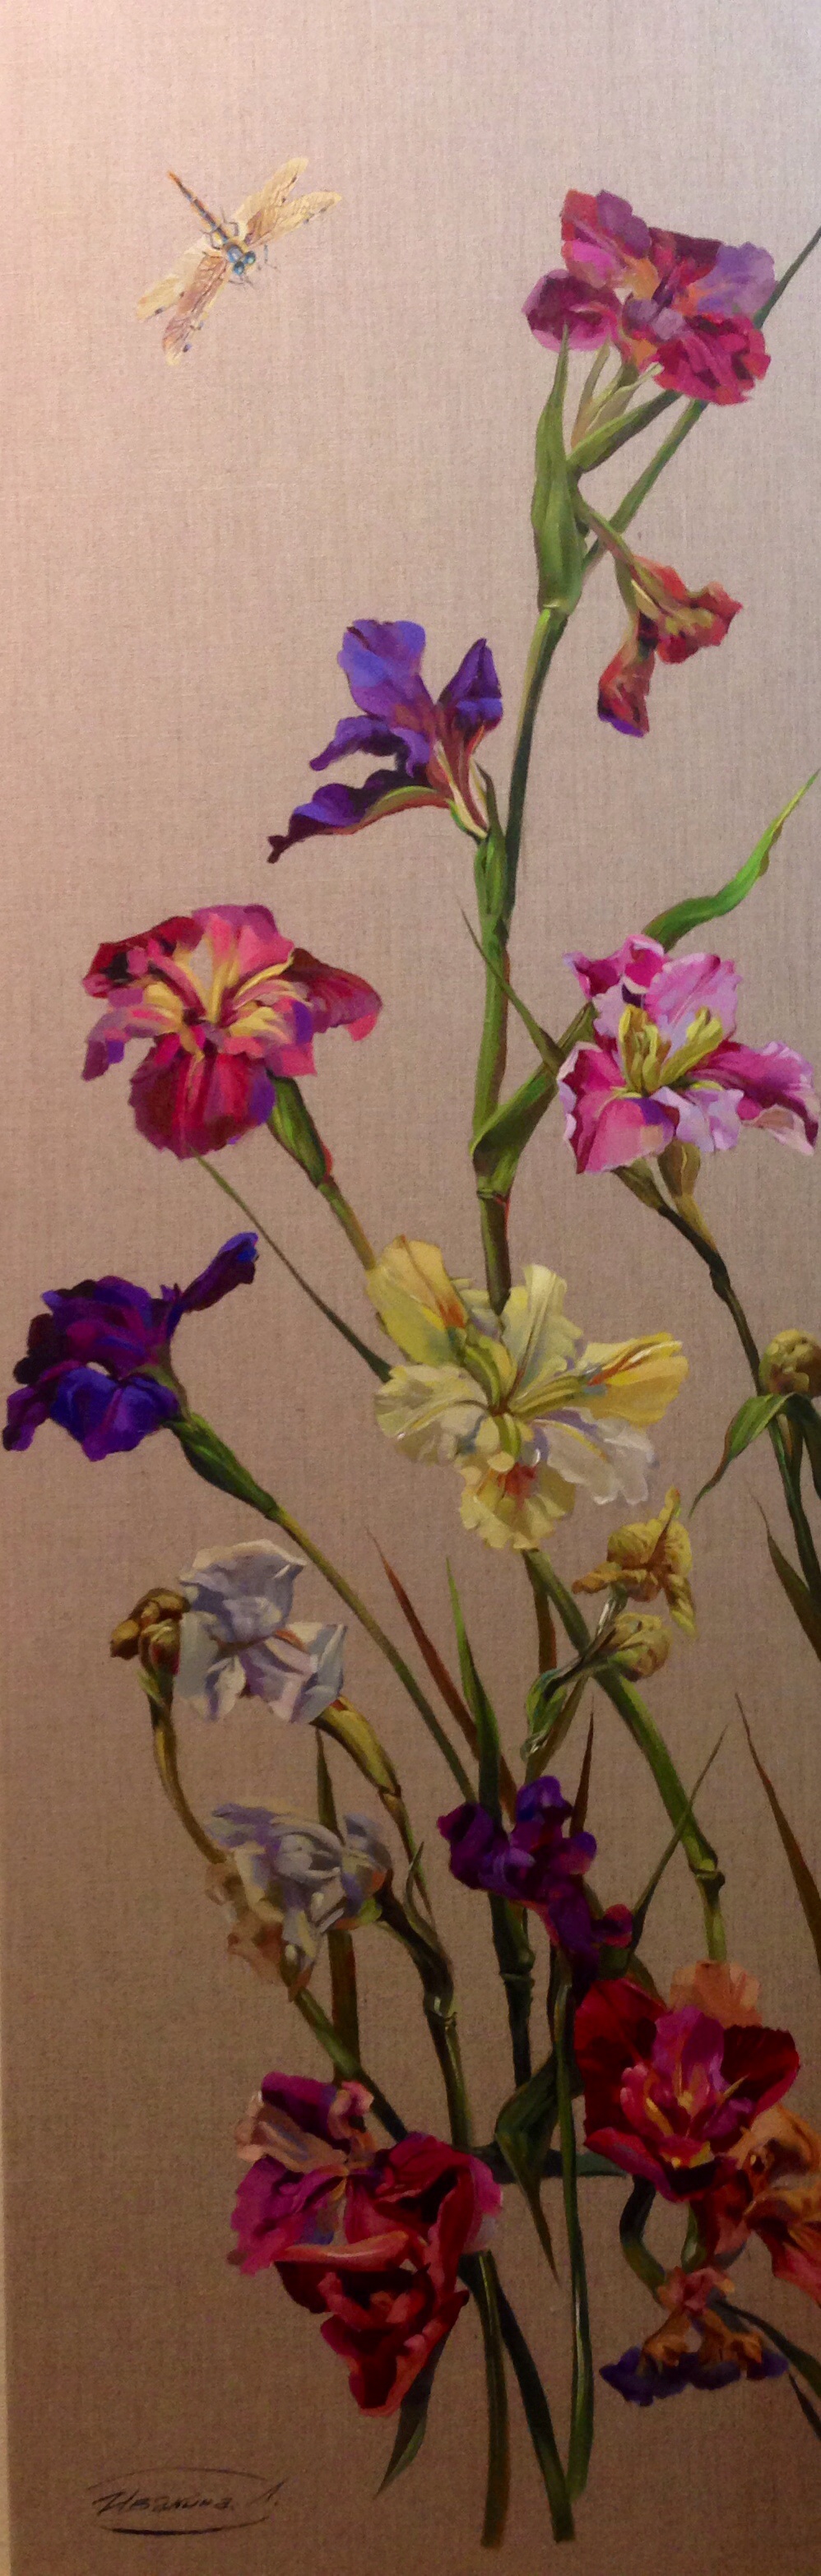 Irises on linen